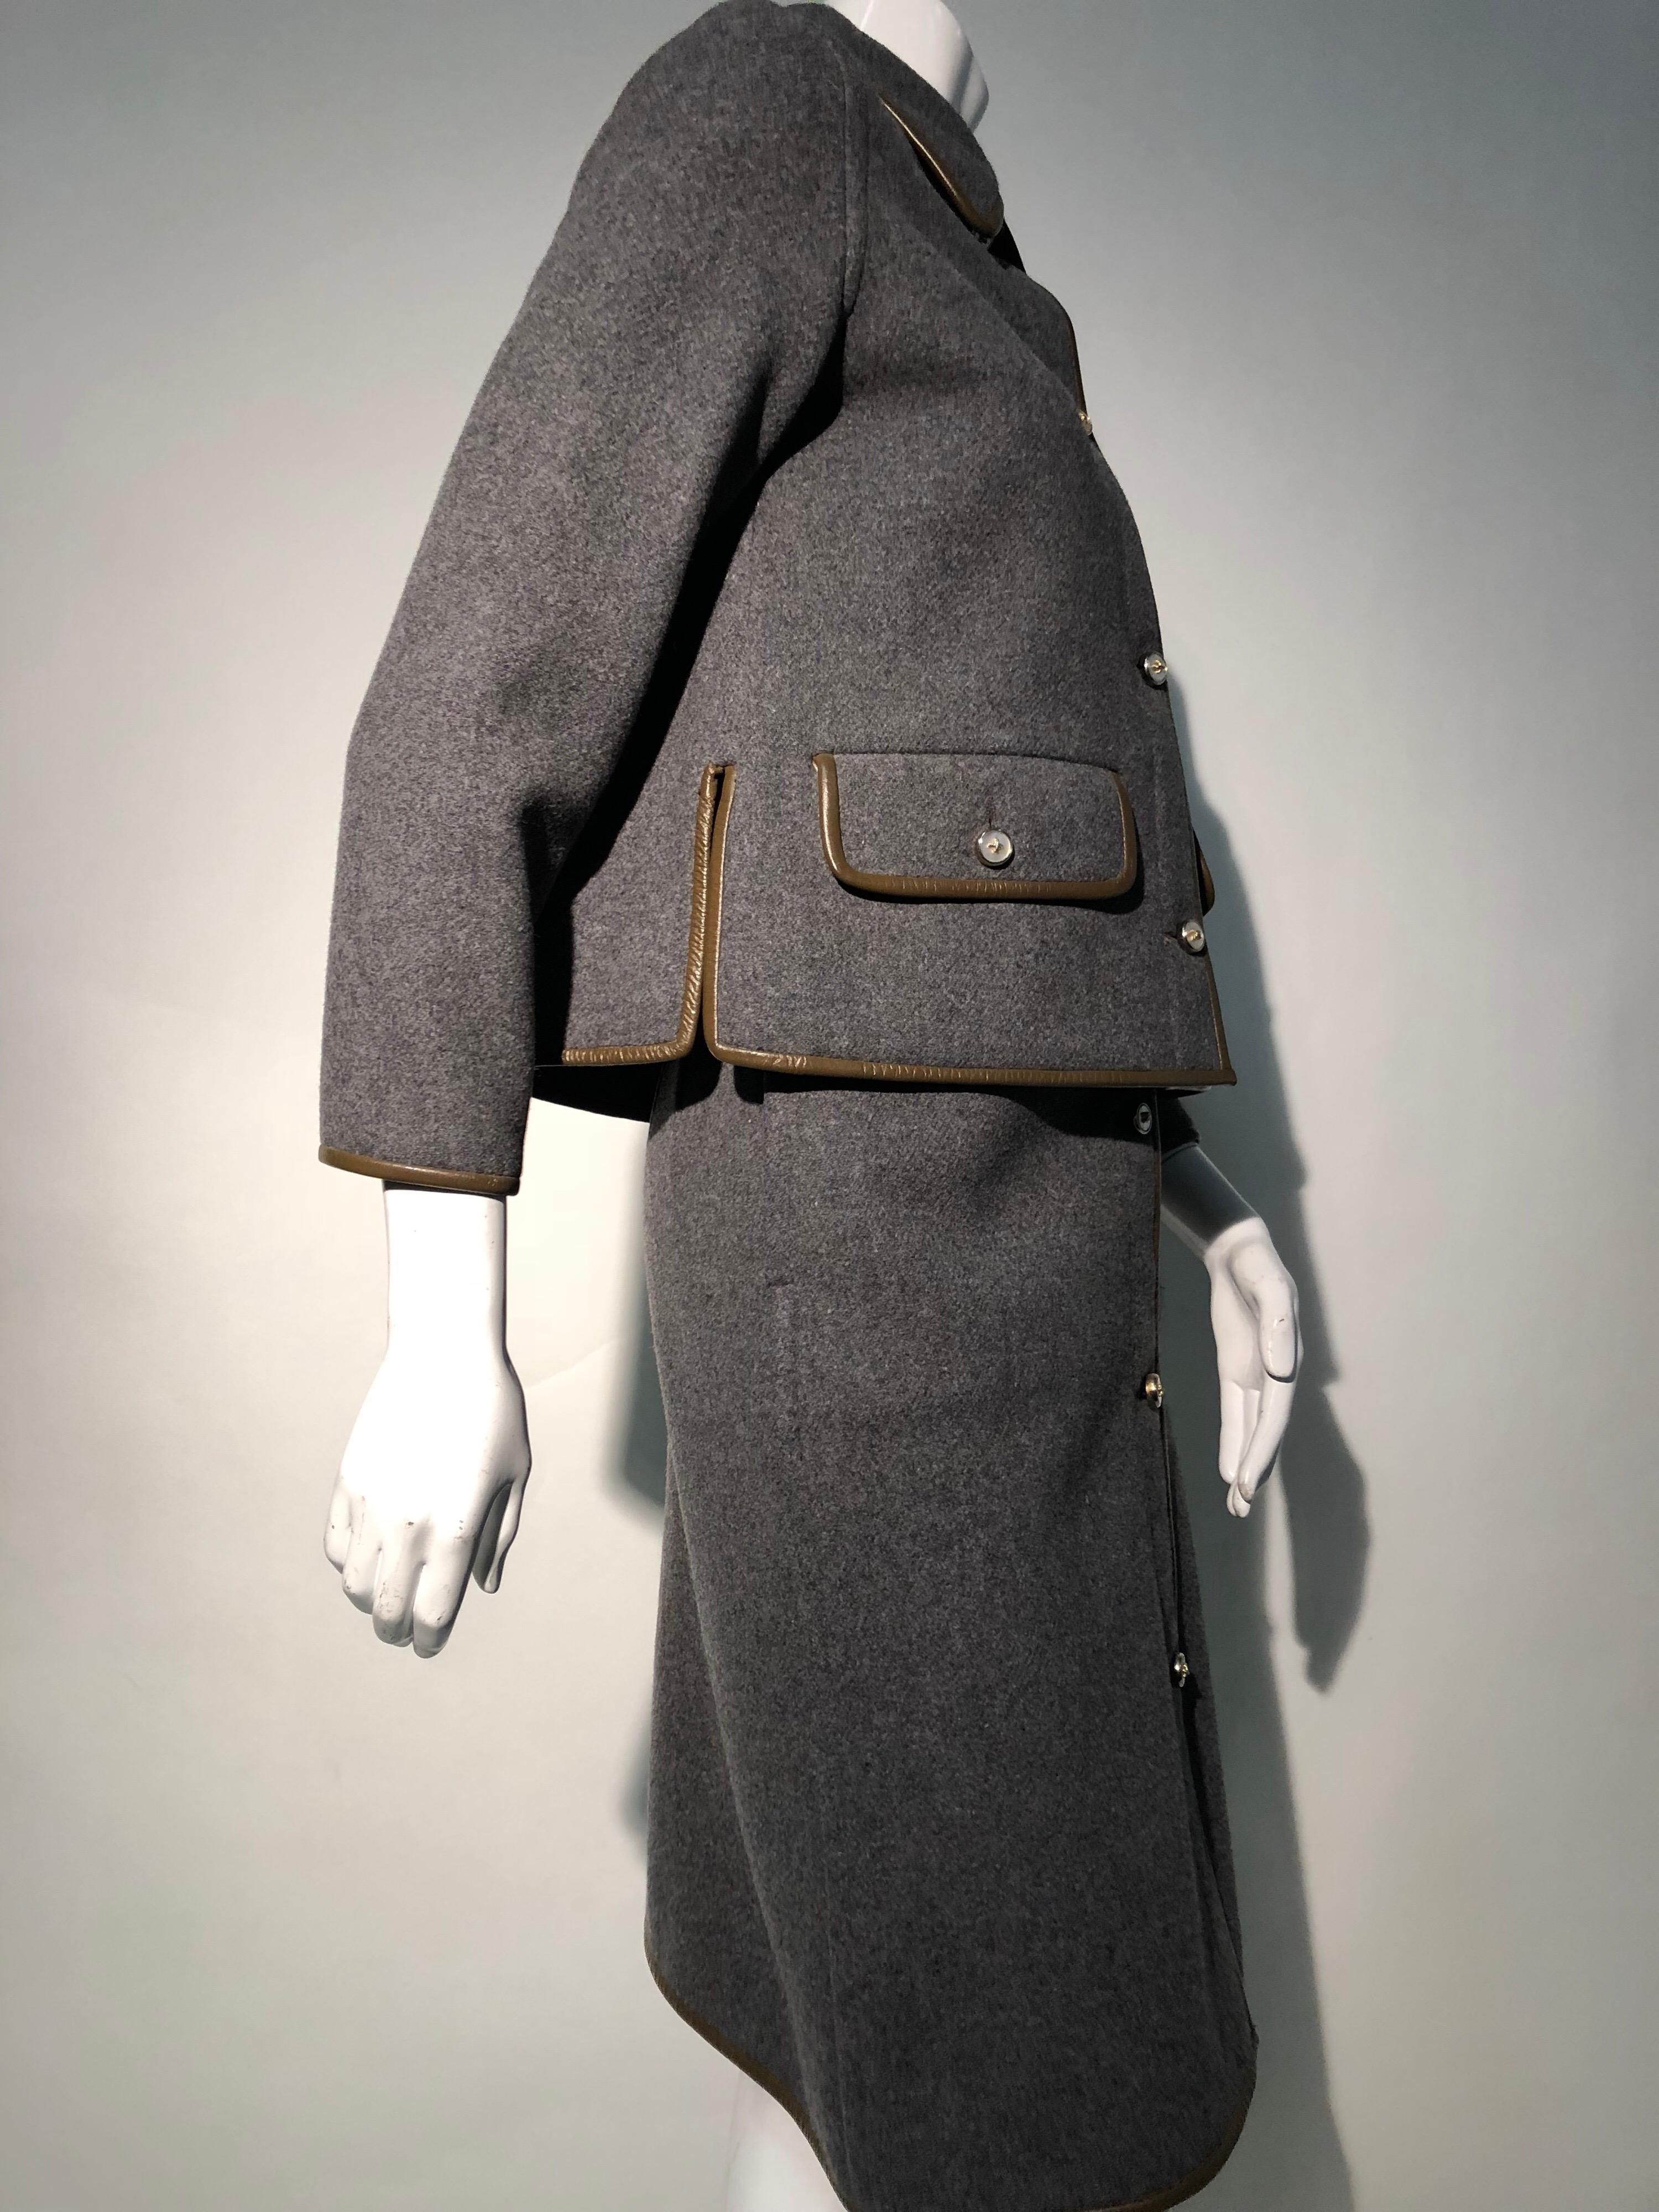 Tailleur jupe en laine grise avec bordure en cuir marron Sills by Bonnie Cashin, années 1960 en vente 2